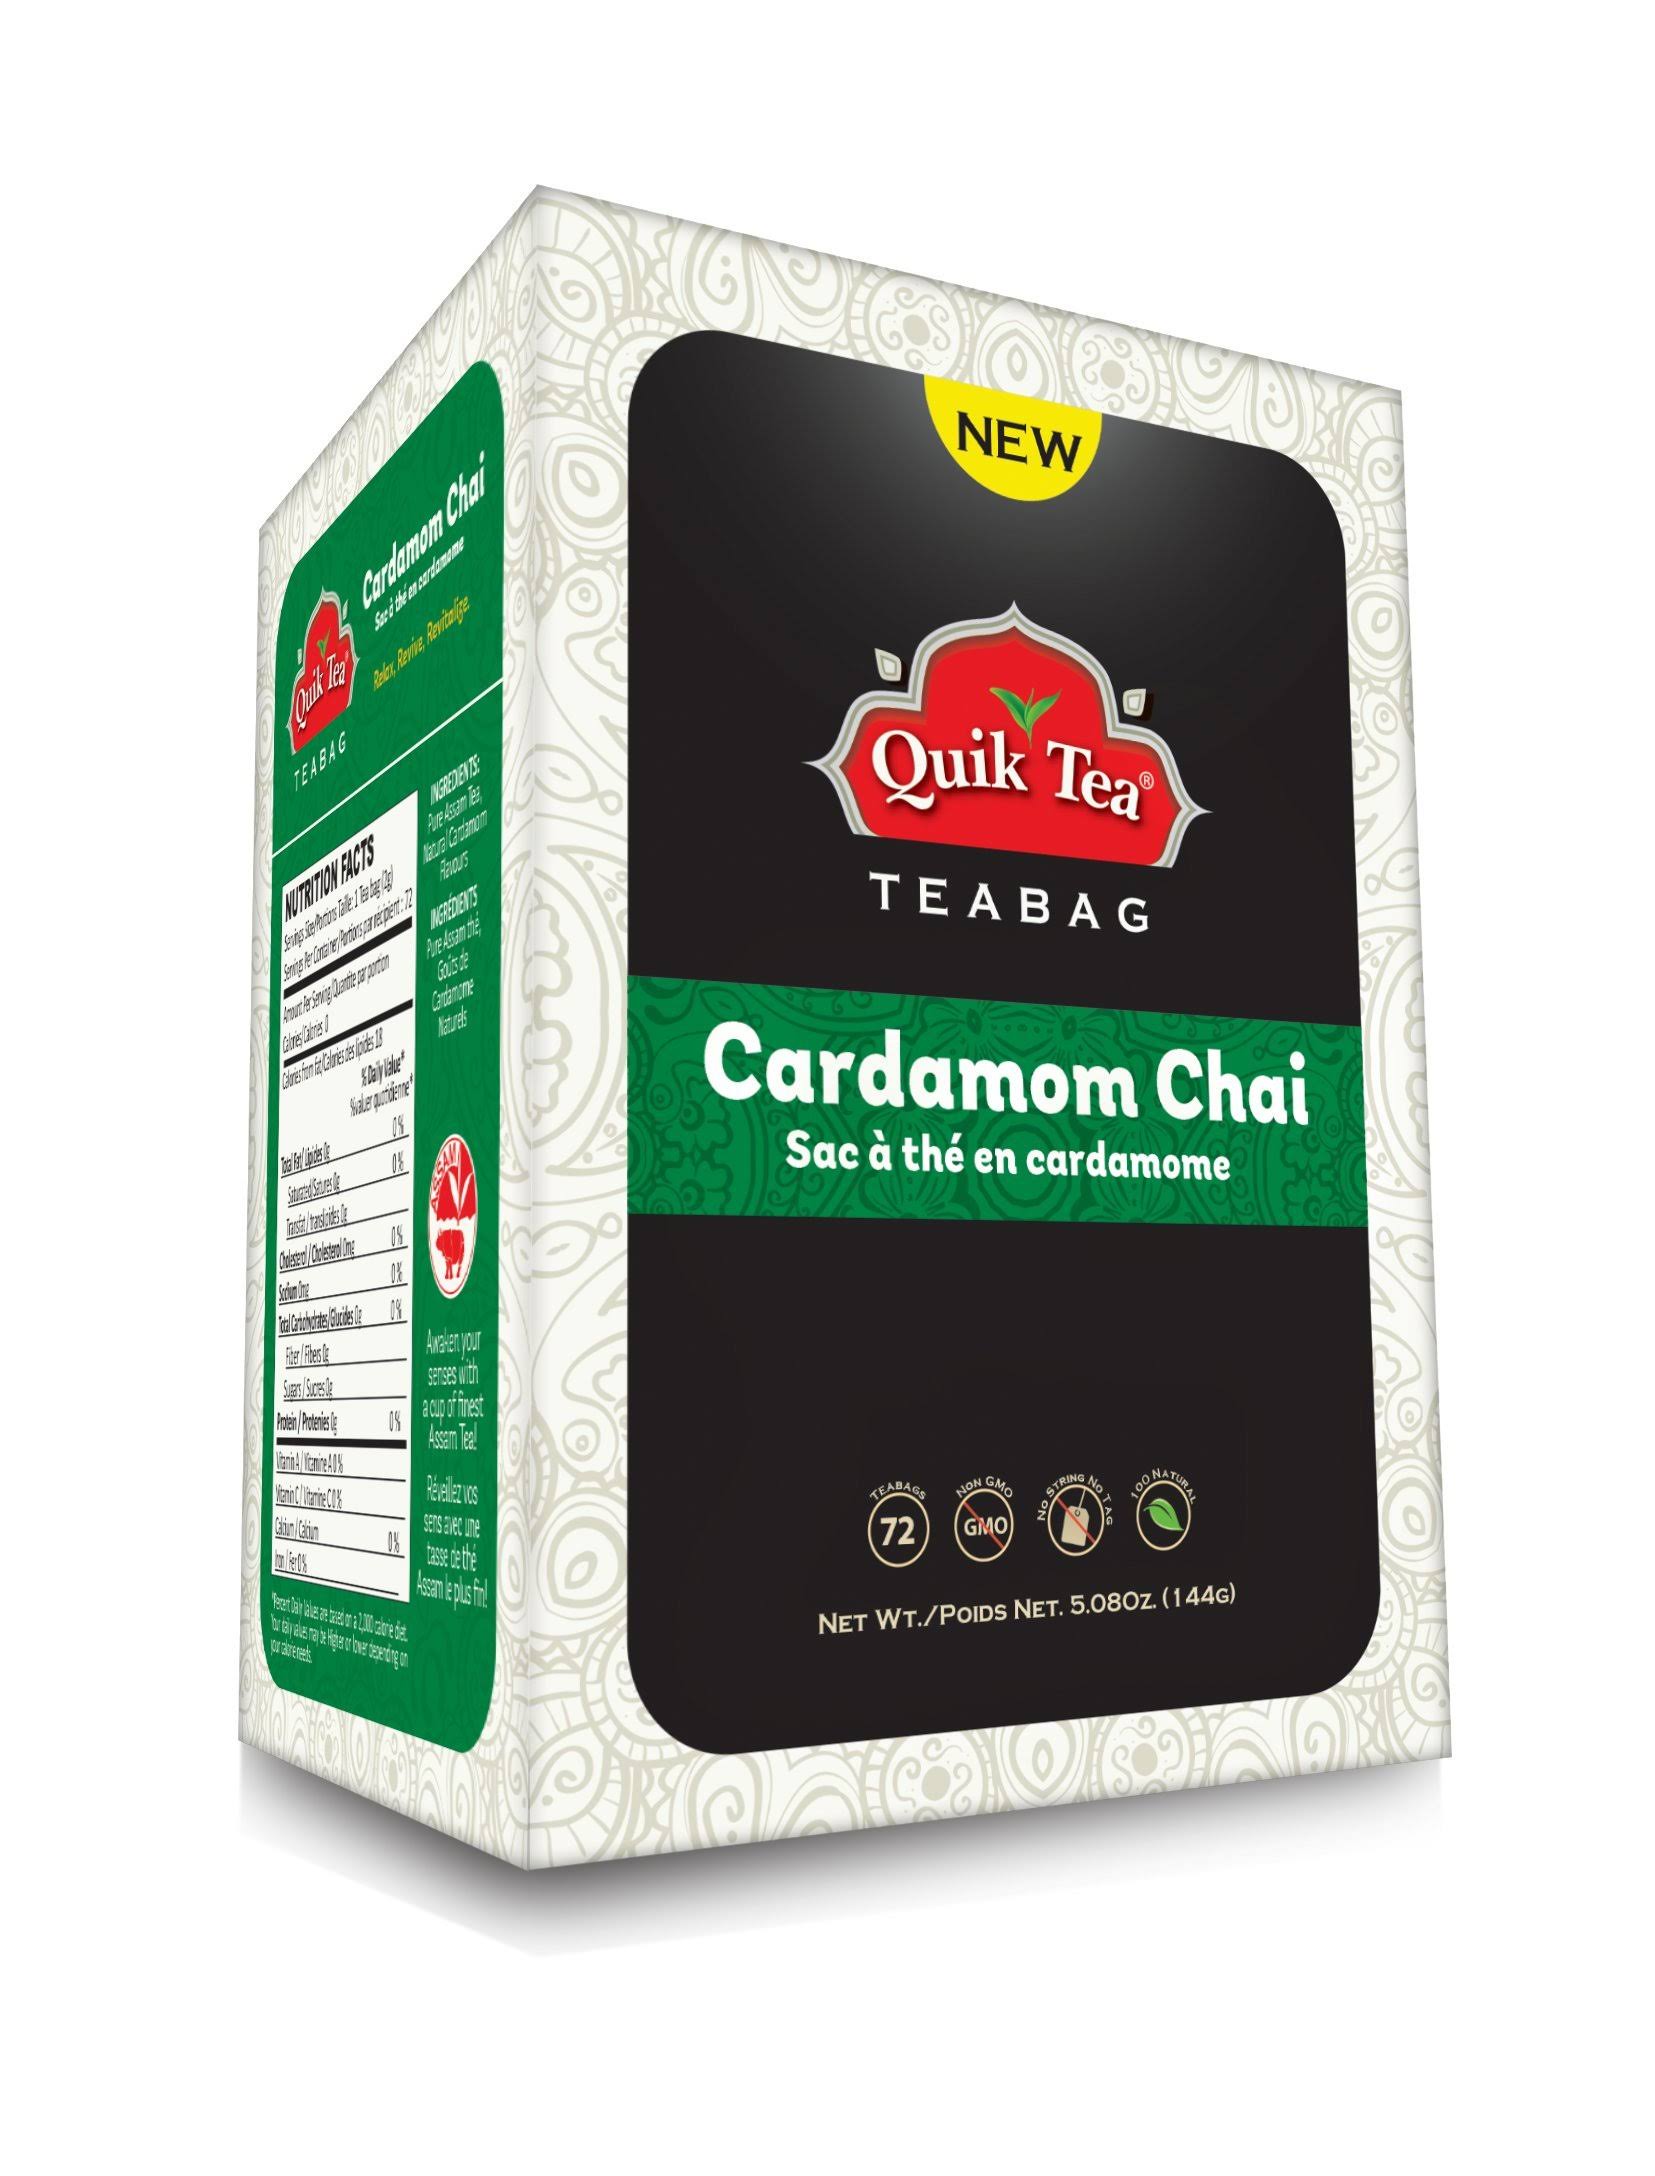 QuikTea Cardamom Chai Tea Bags - 7 oz